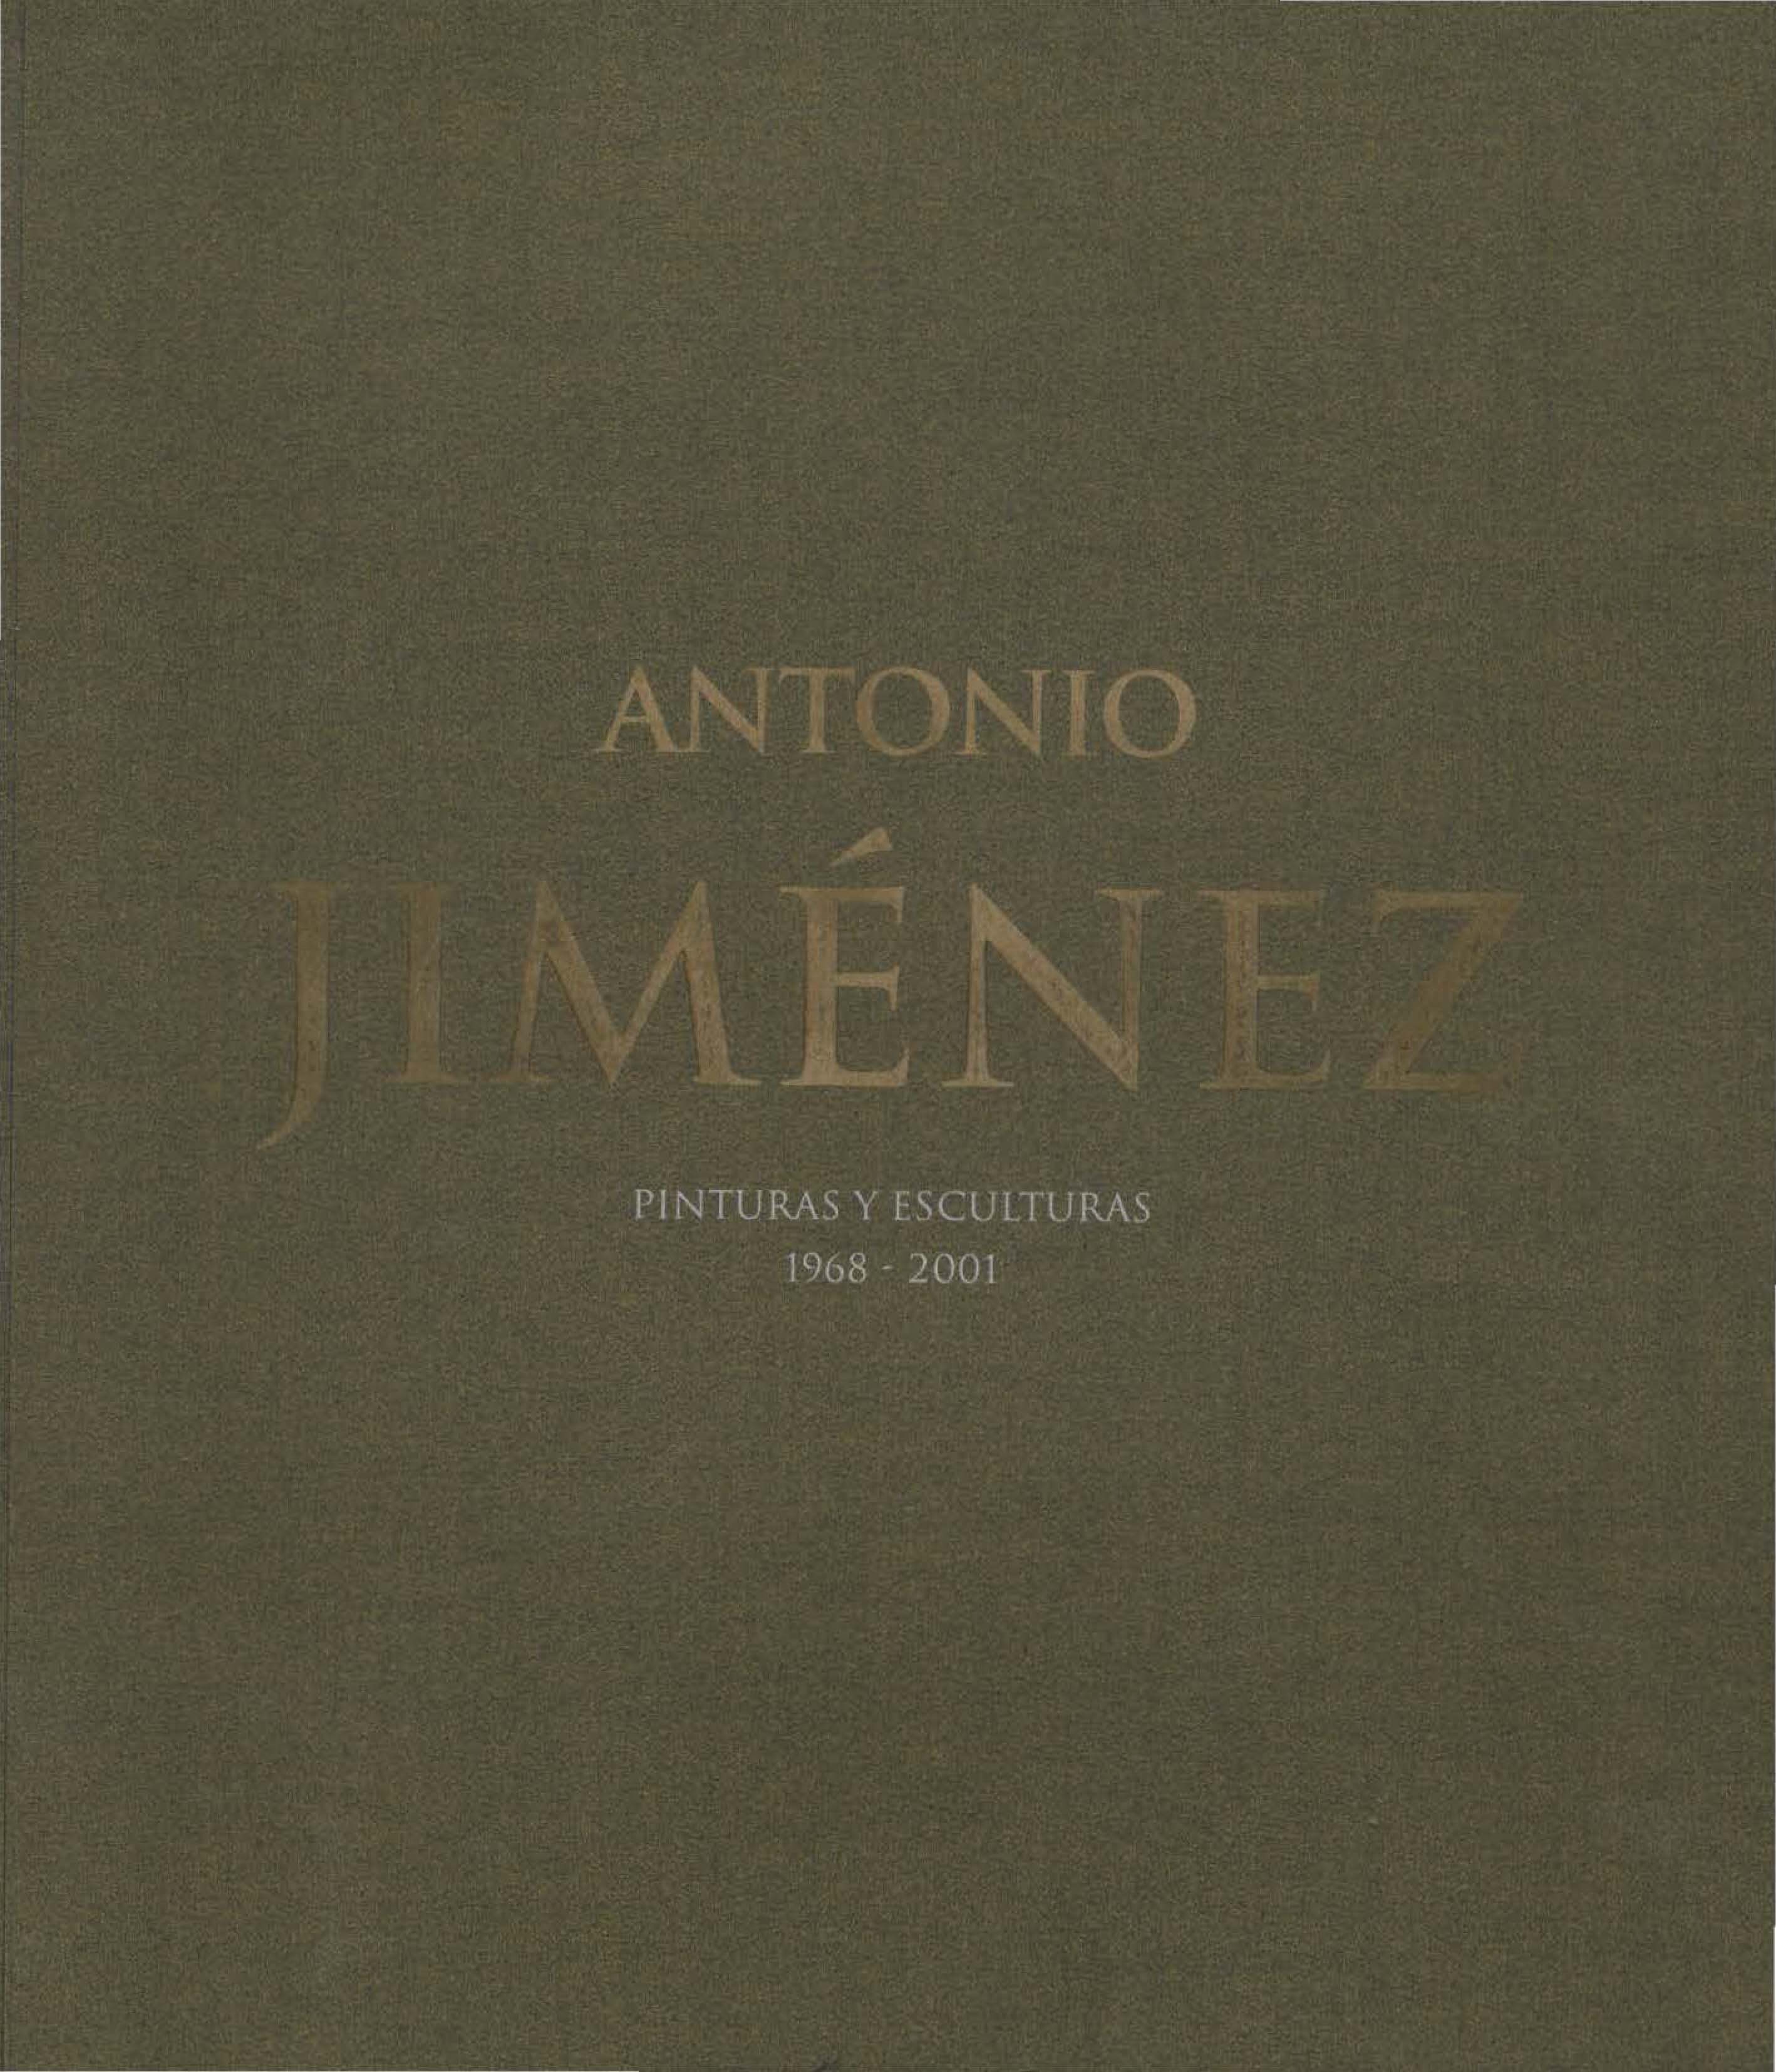 Antonio Jiménez. Pinturas y Esculturas 1968-2001